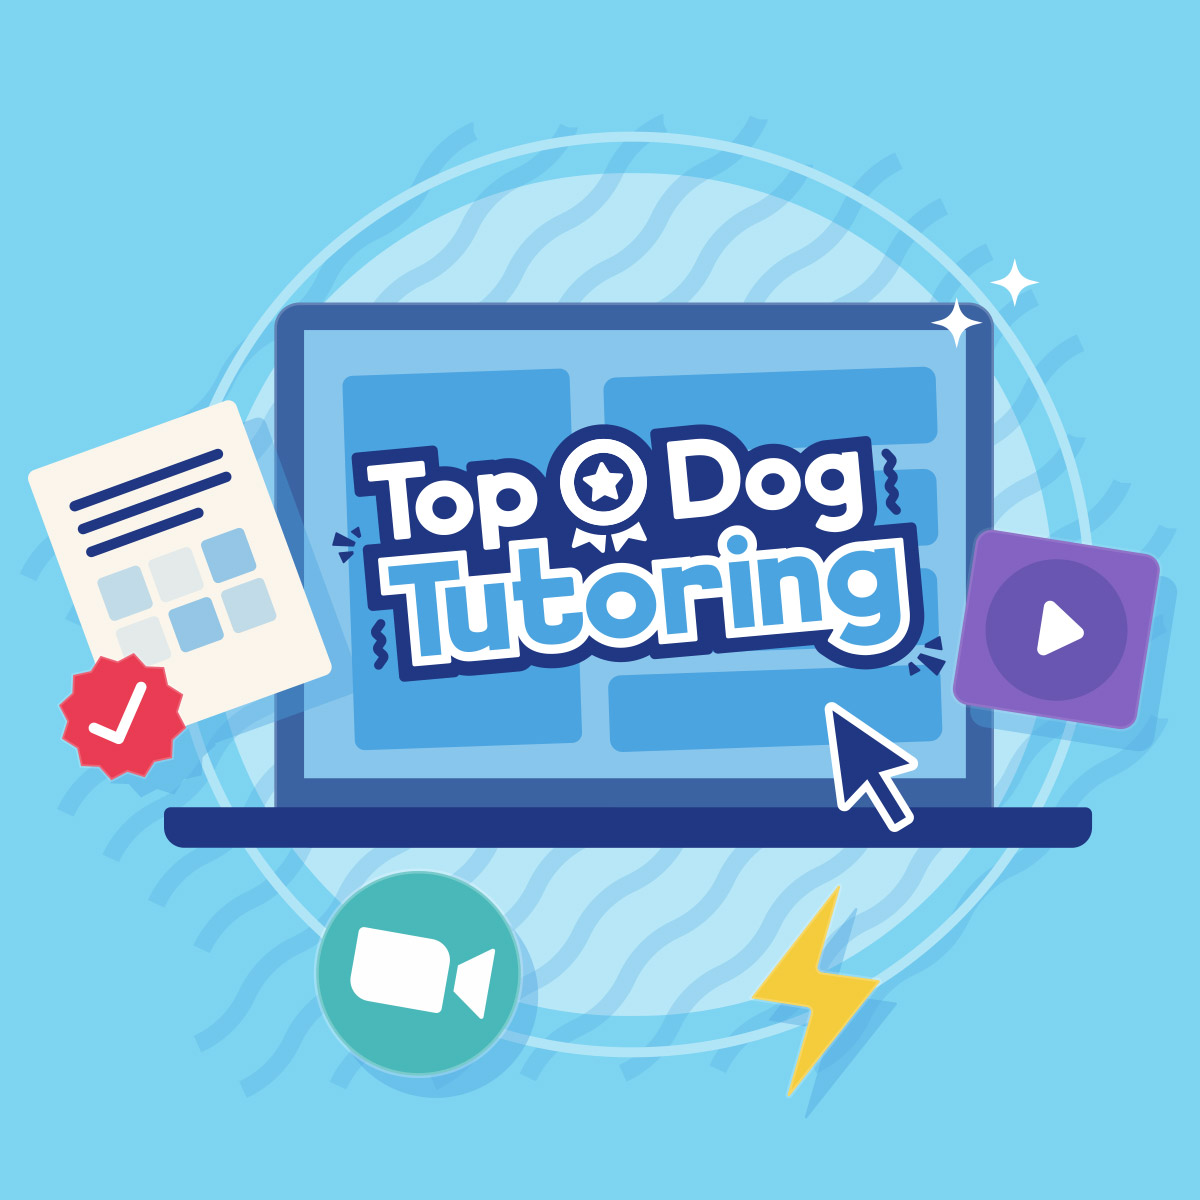 Top Dog Tutoring